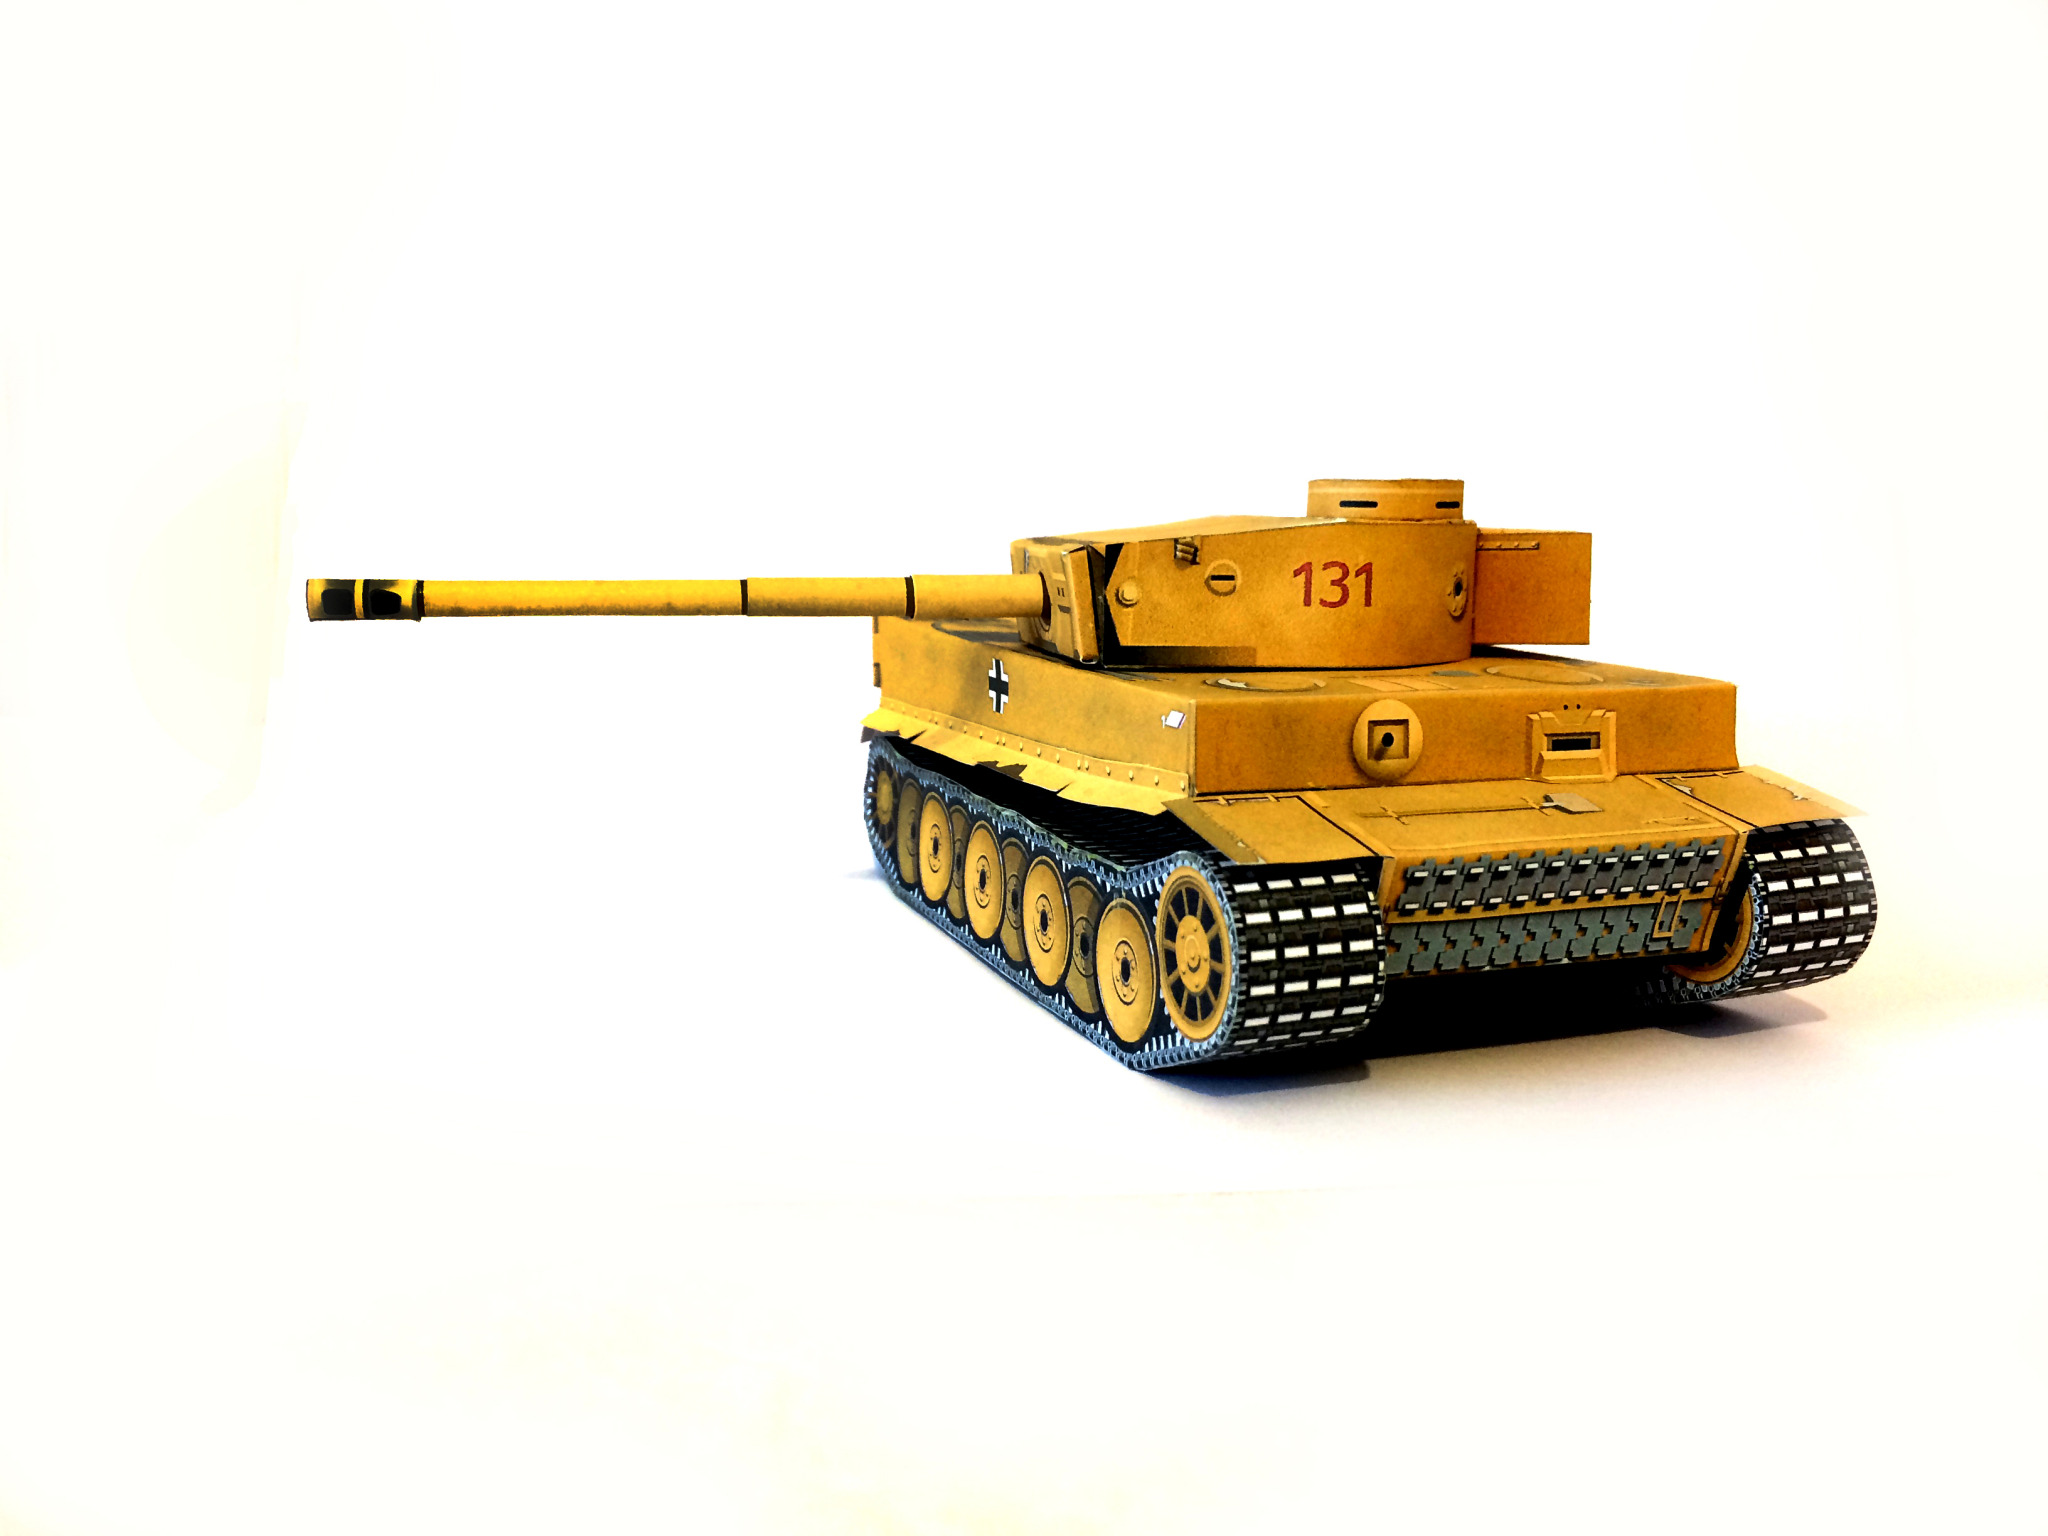 Paper Panzer — Paper Tank Panzer Iii Model Diy Kit Homemade